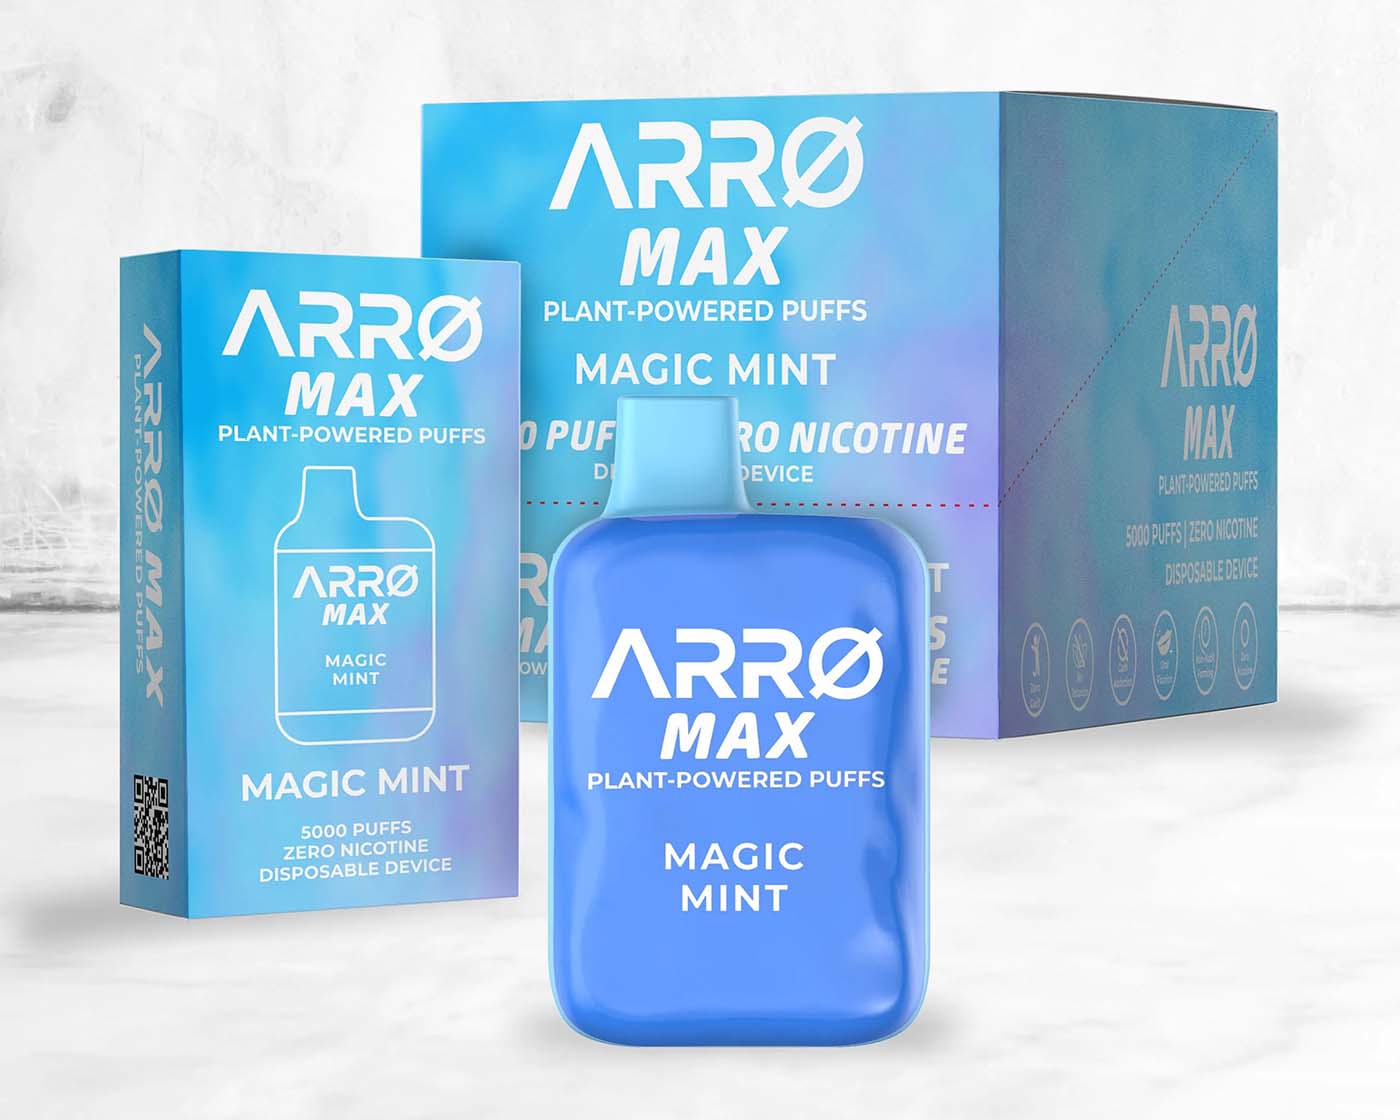 ARRØ Max Vape in Magic Mint flavor